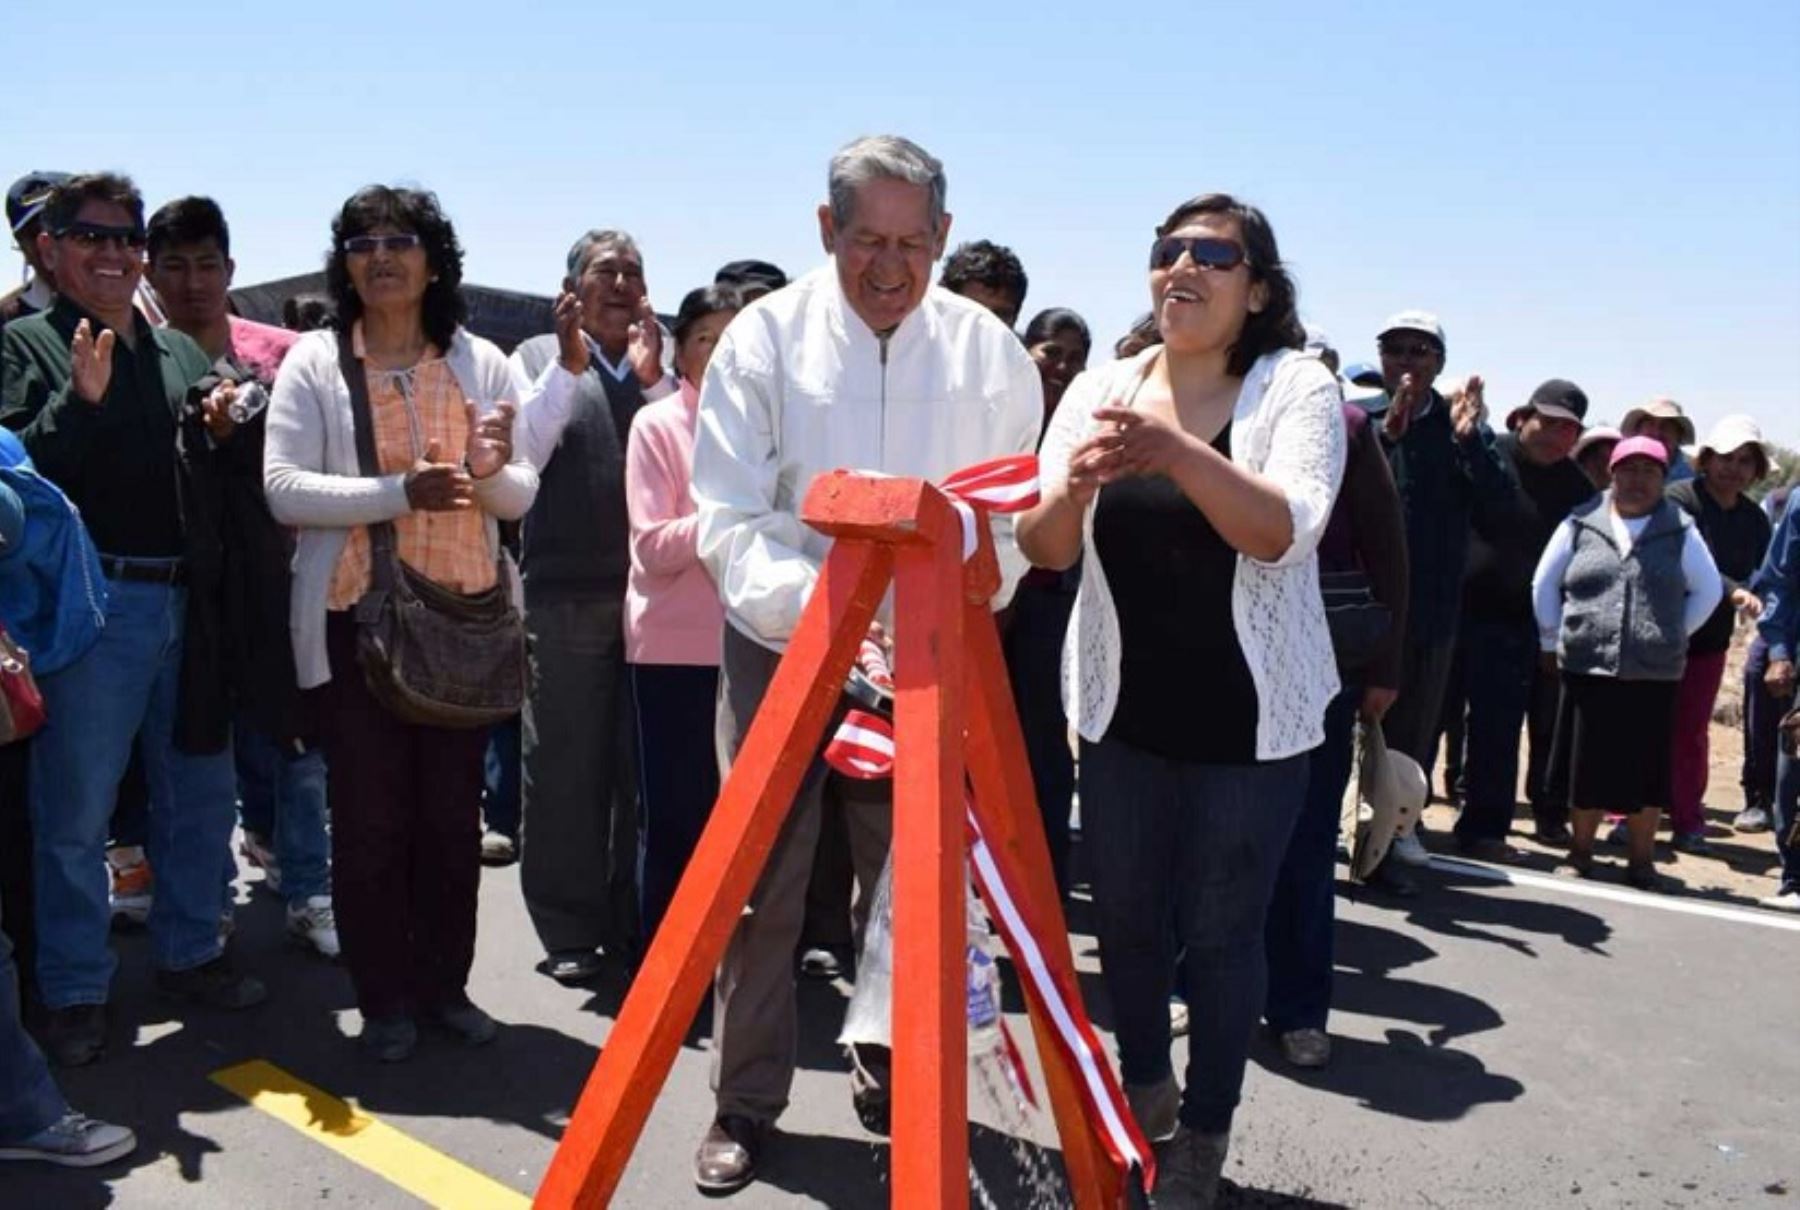 La nueva carretera inaugurada por el alcalde provincial de Tacna, Luis Torres Robledo, en el distrito fronterizo de La Yarada-Los Palos, se convertirá en una importante vía que facilitará el transporte de los productos agrícolas y pesqueros, además de fomentar el turismo, sostuvo la autoridad edilicia.